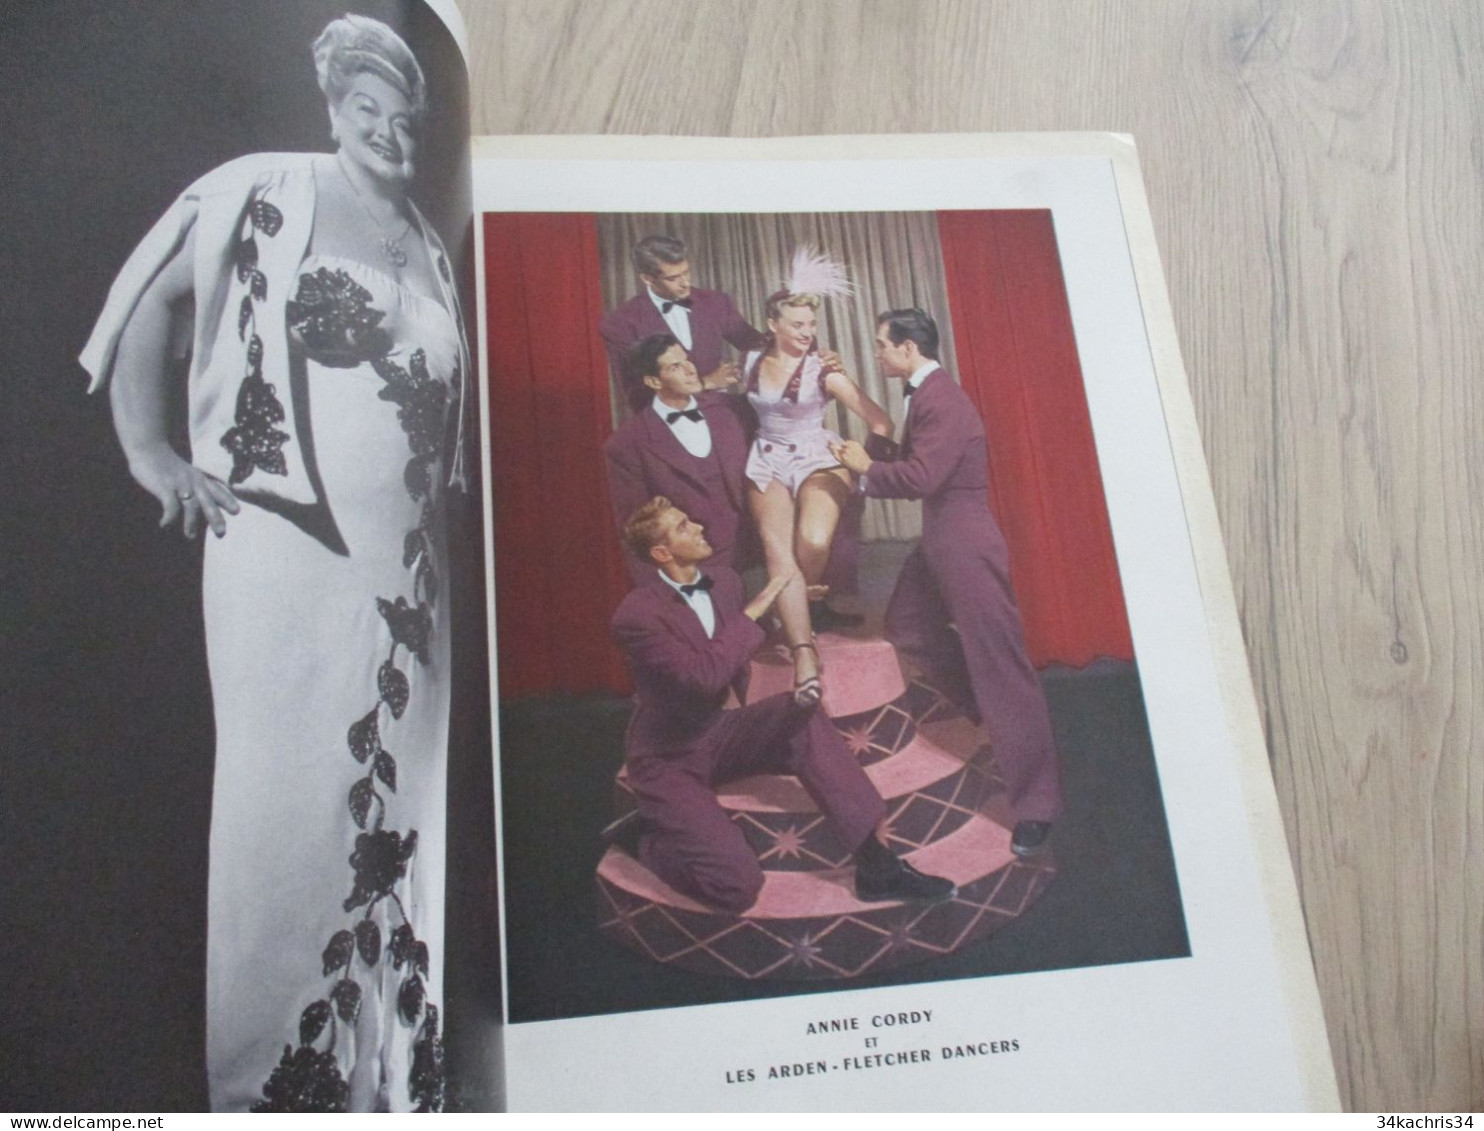 STC 35 Programme illustré Lido Paris Nu NUde 1950 musique spectacle Finnel Cordy cirque magie.....